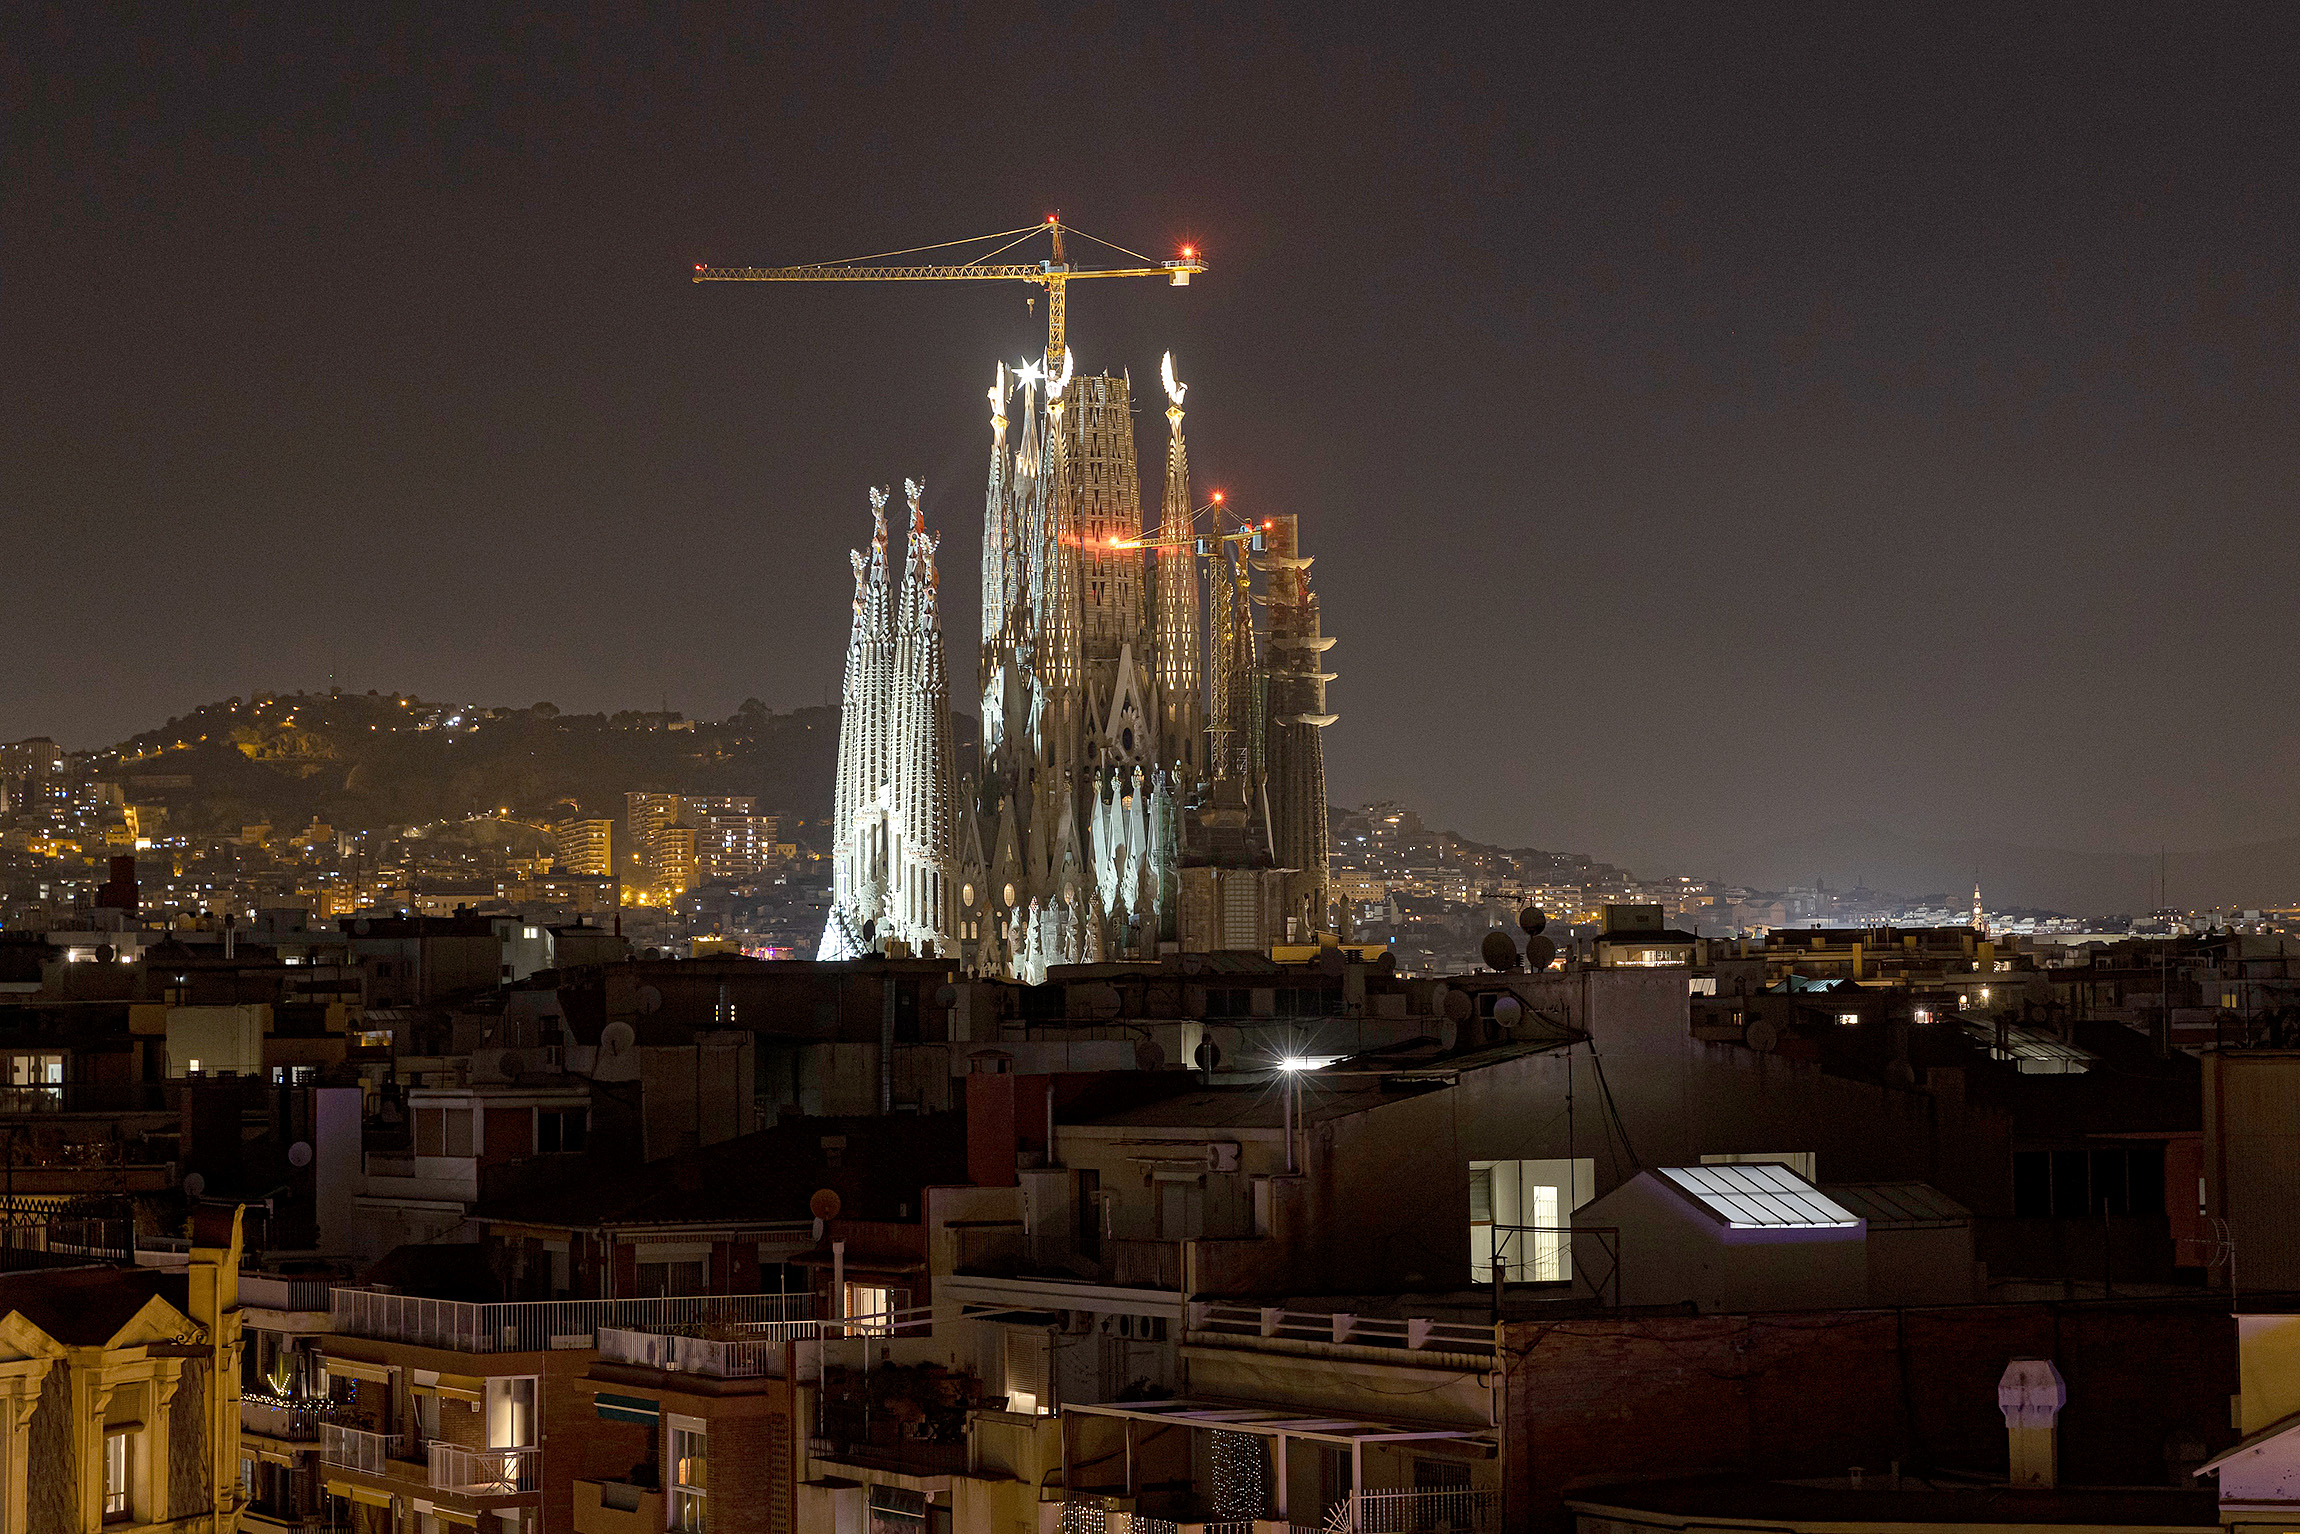 Ça ira mieux demain… La folie visionnaire d’Antoni Gaudí